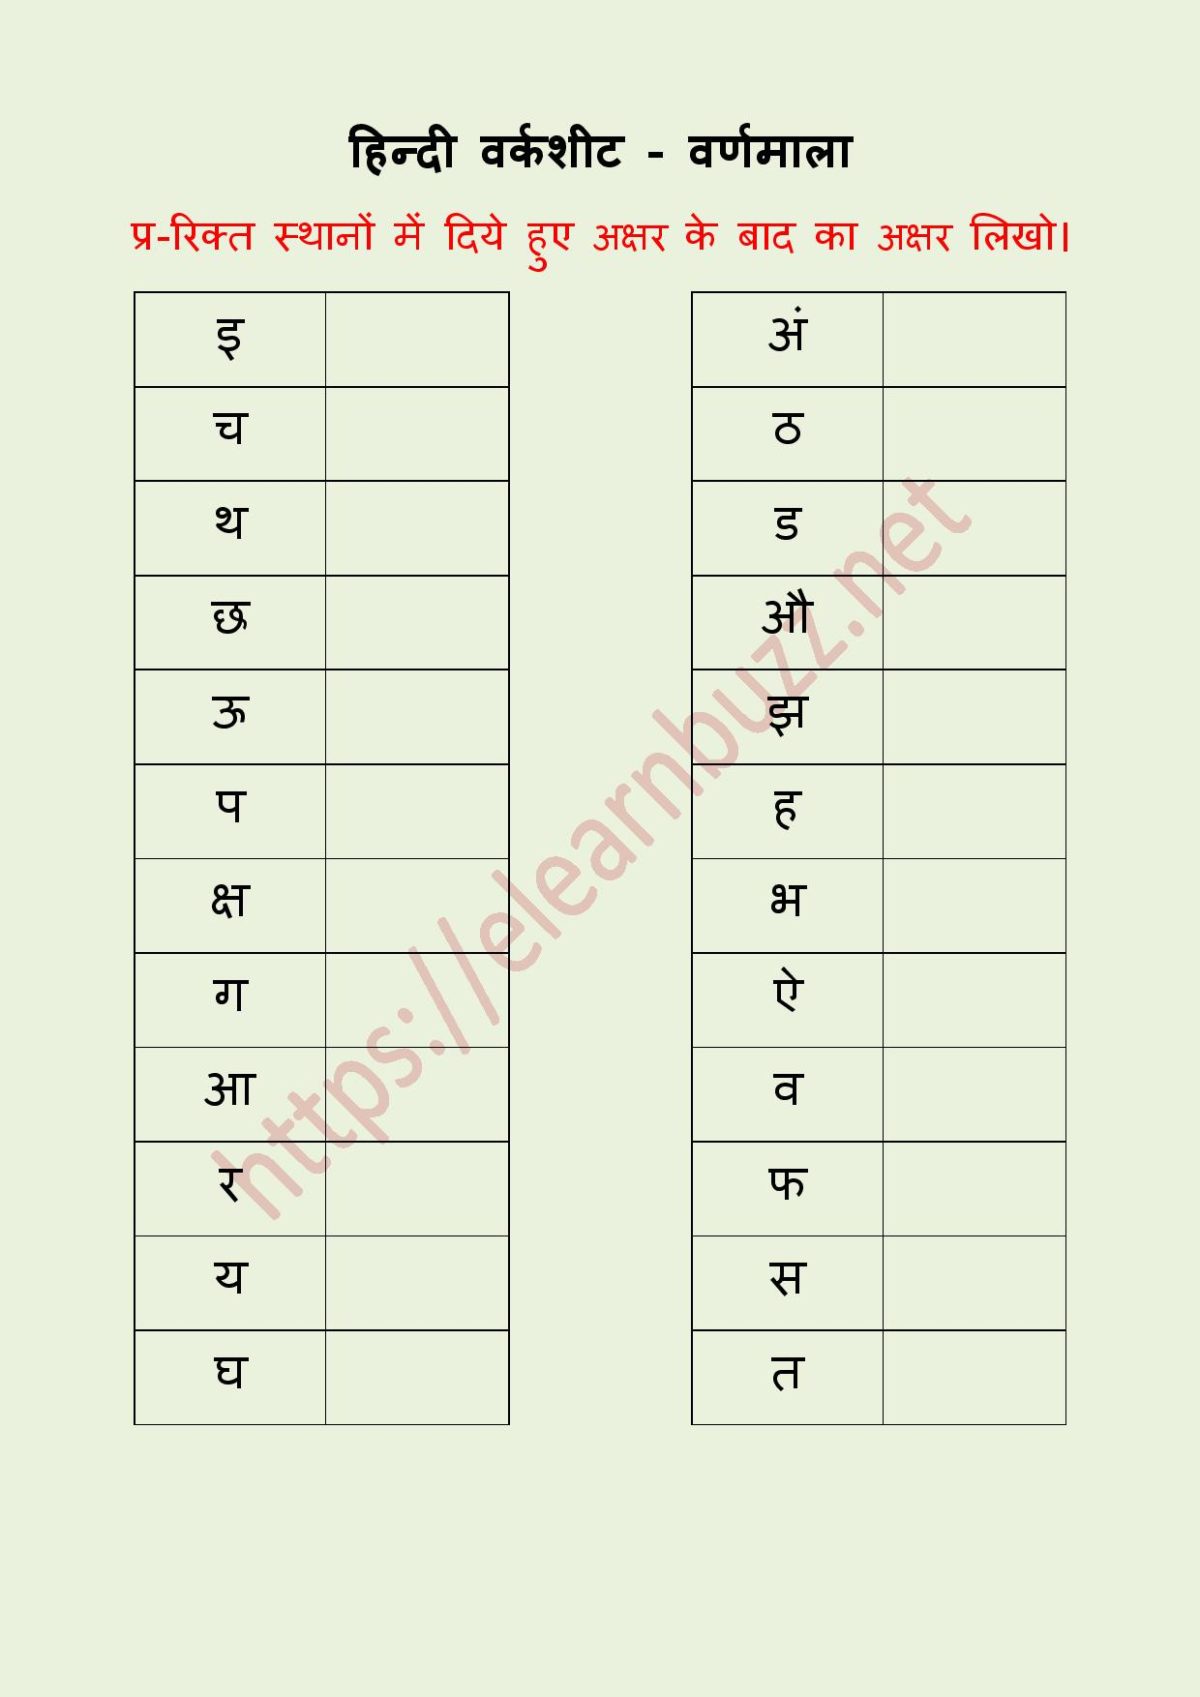 वर्णमाला वर्कशीट - Hindi Varnamala Worksheets - eLearnBuzz